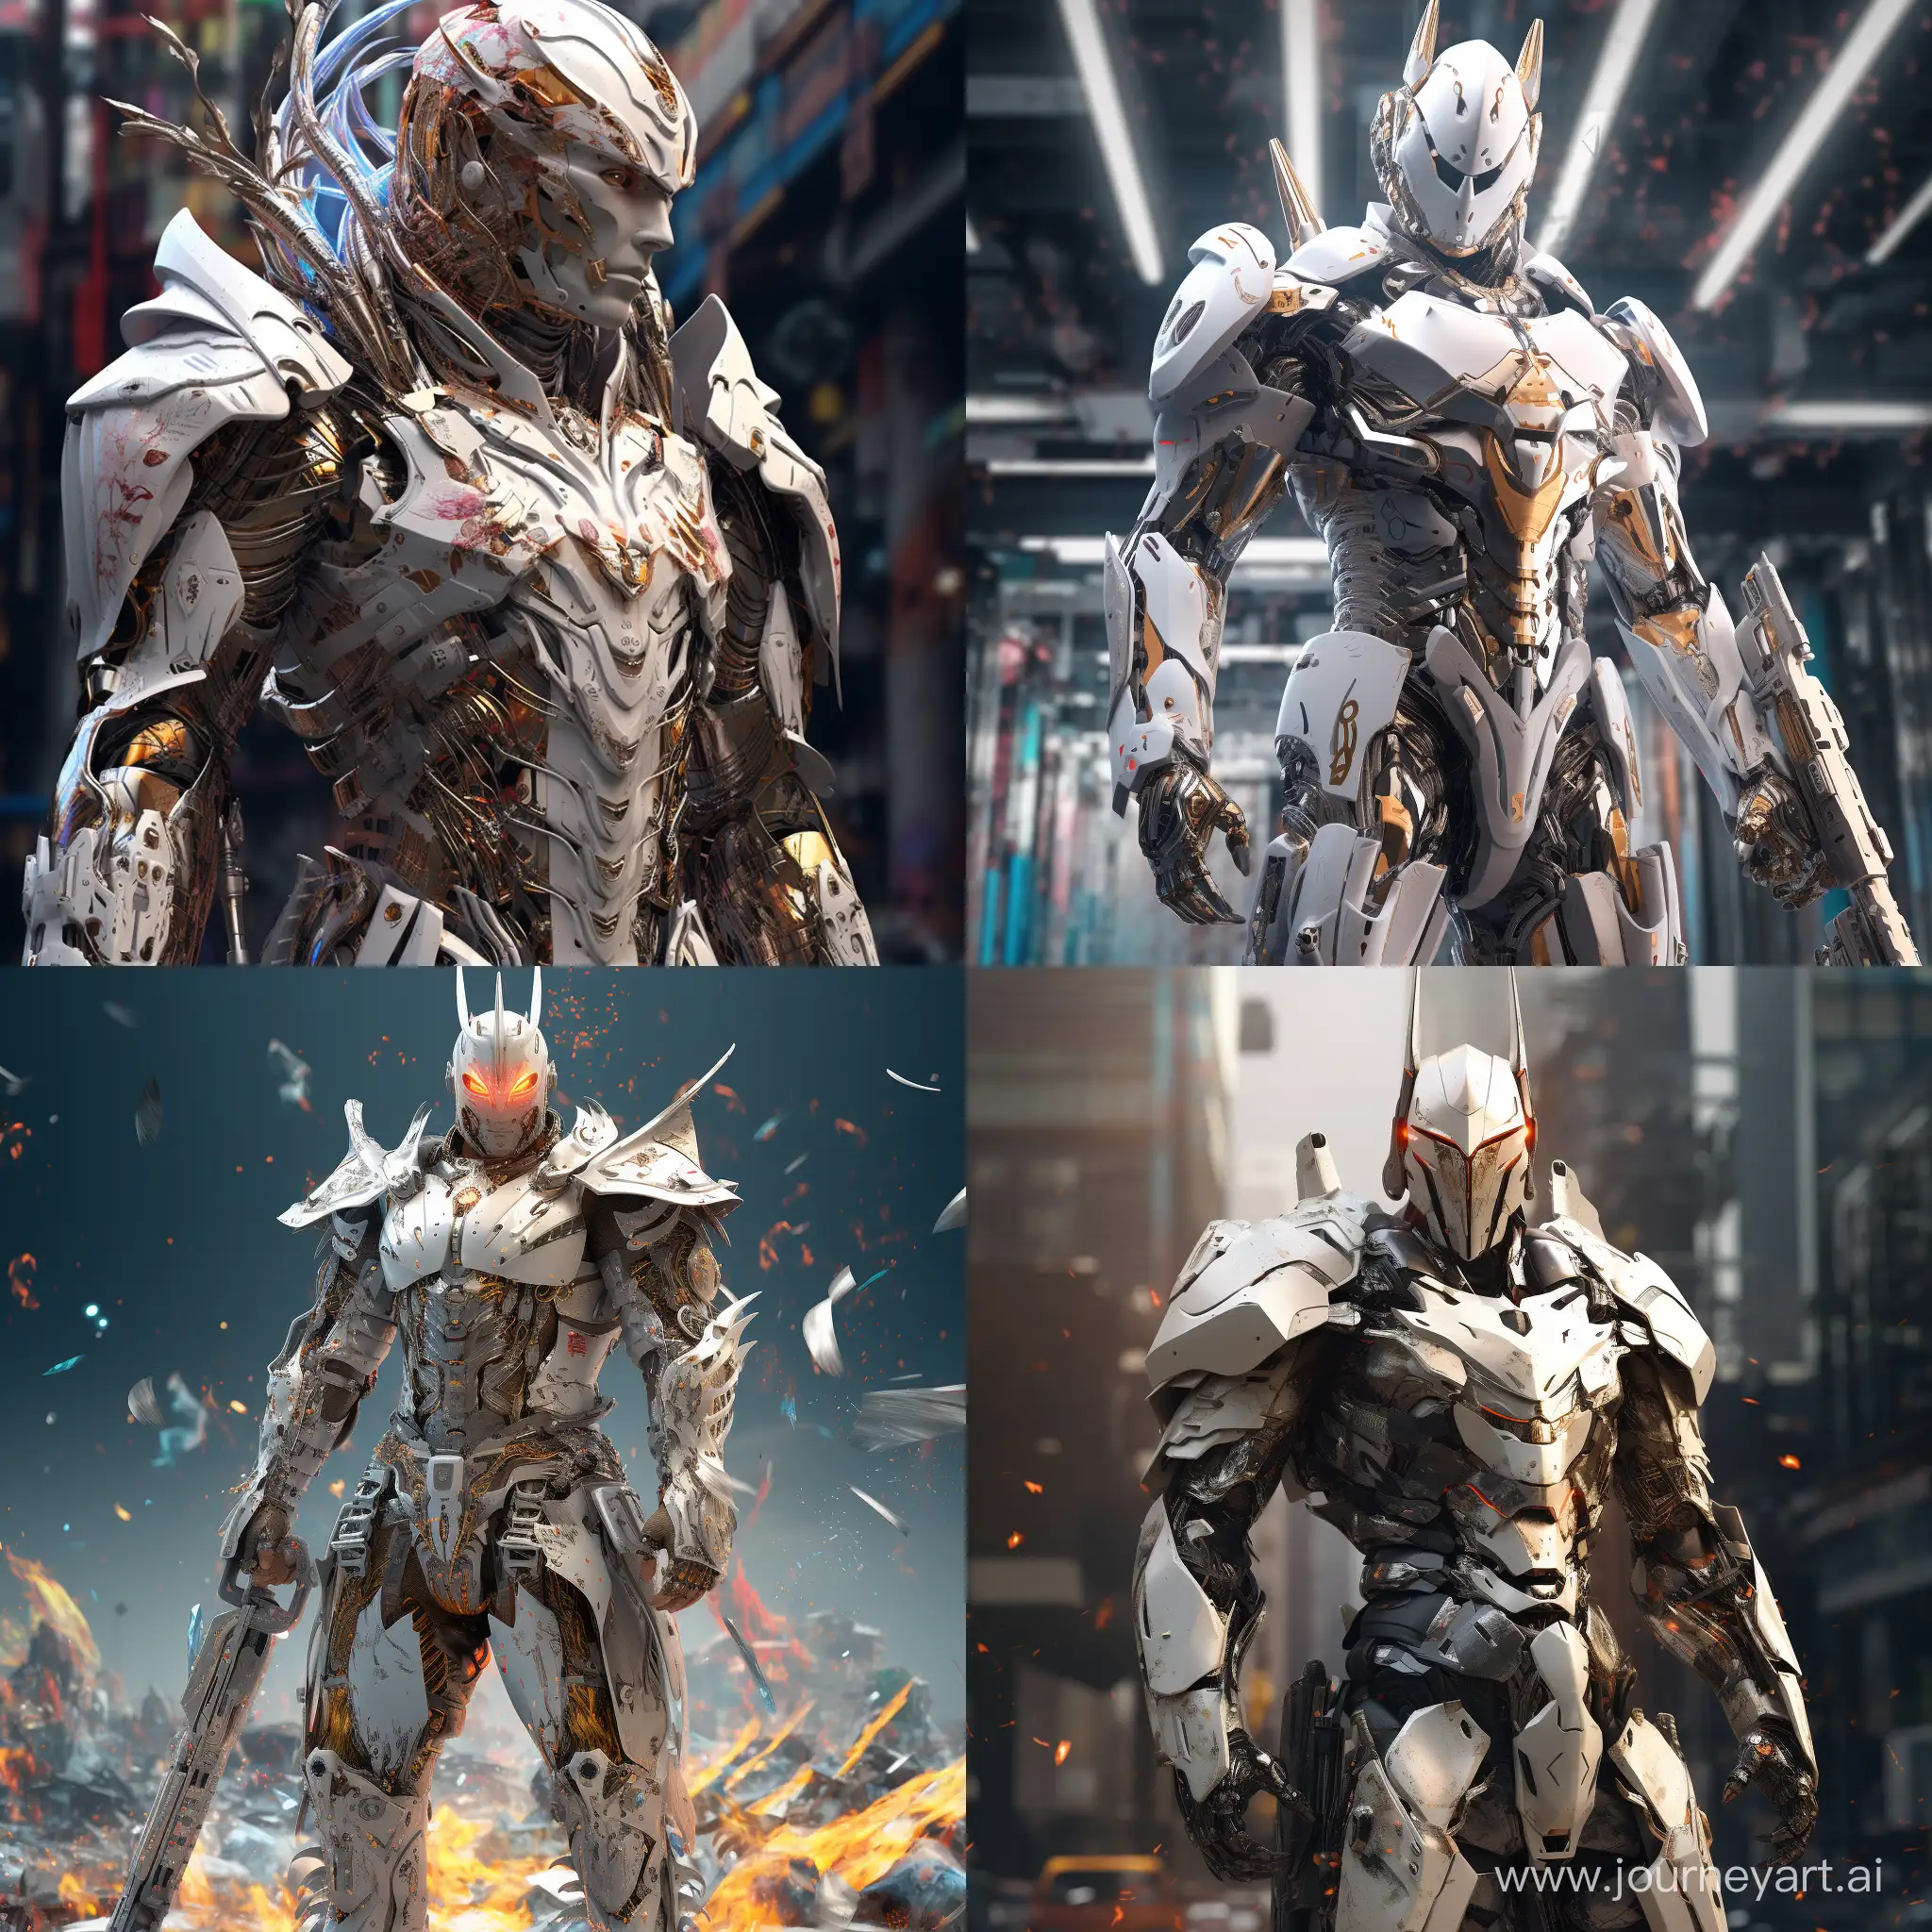 Futuristic-Cyberpunk-White-Knight-in-Explosive-Digital-Glory